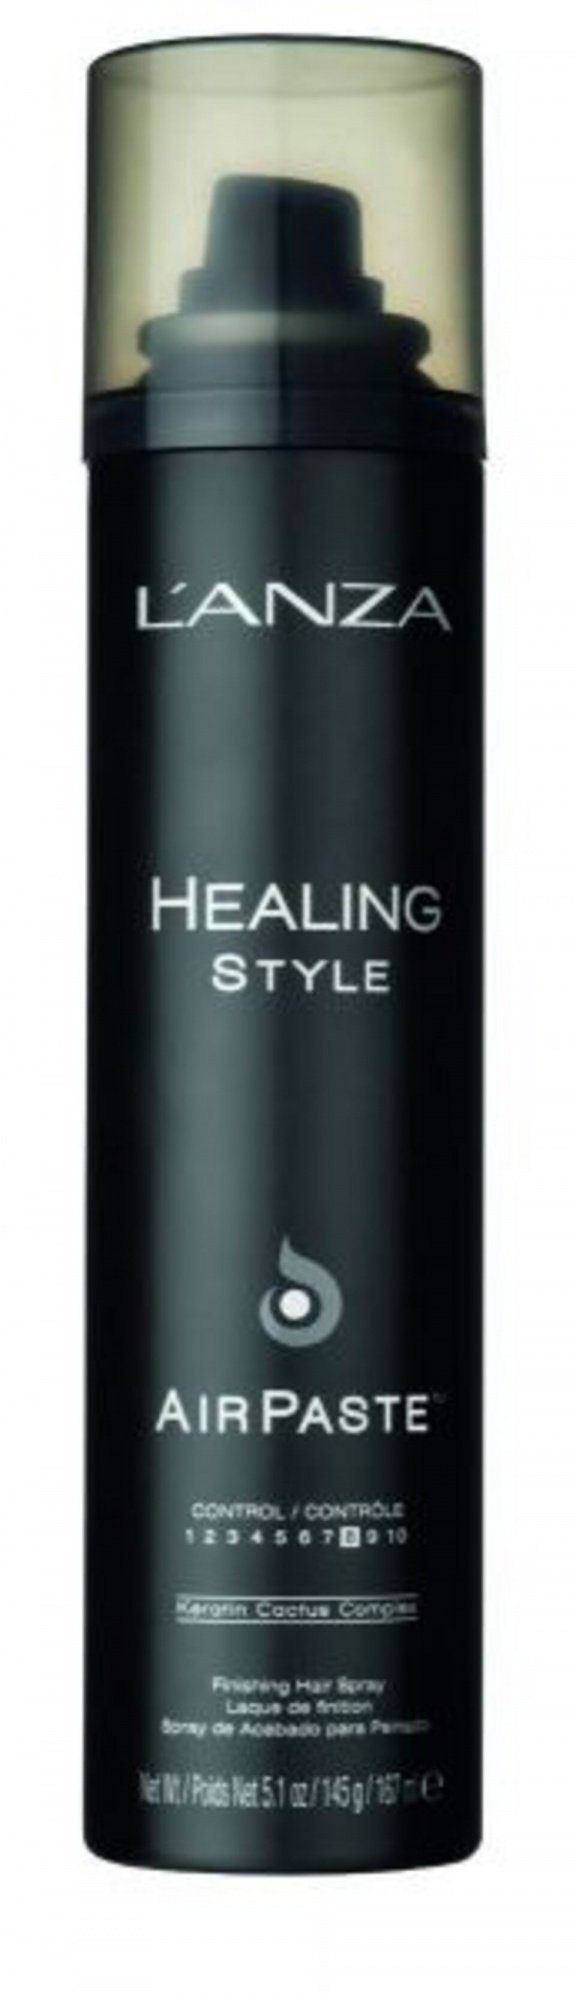 Lanza Haarspray Healing Style Textur, Definition ml, Volumen, Paste Air in 167 1-tlg., Sprayform, Stylingpaste